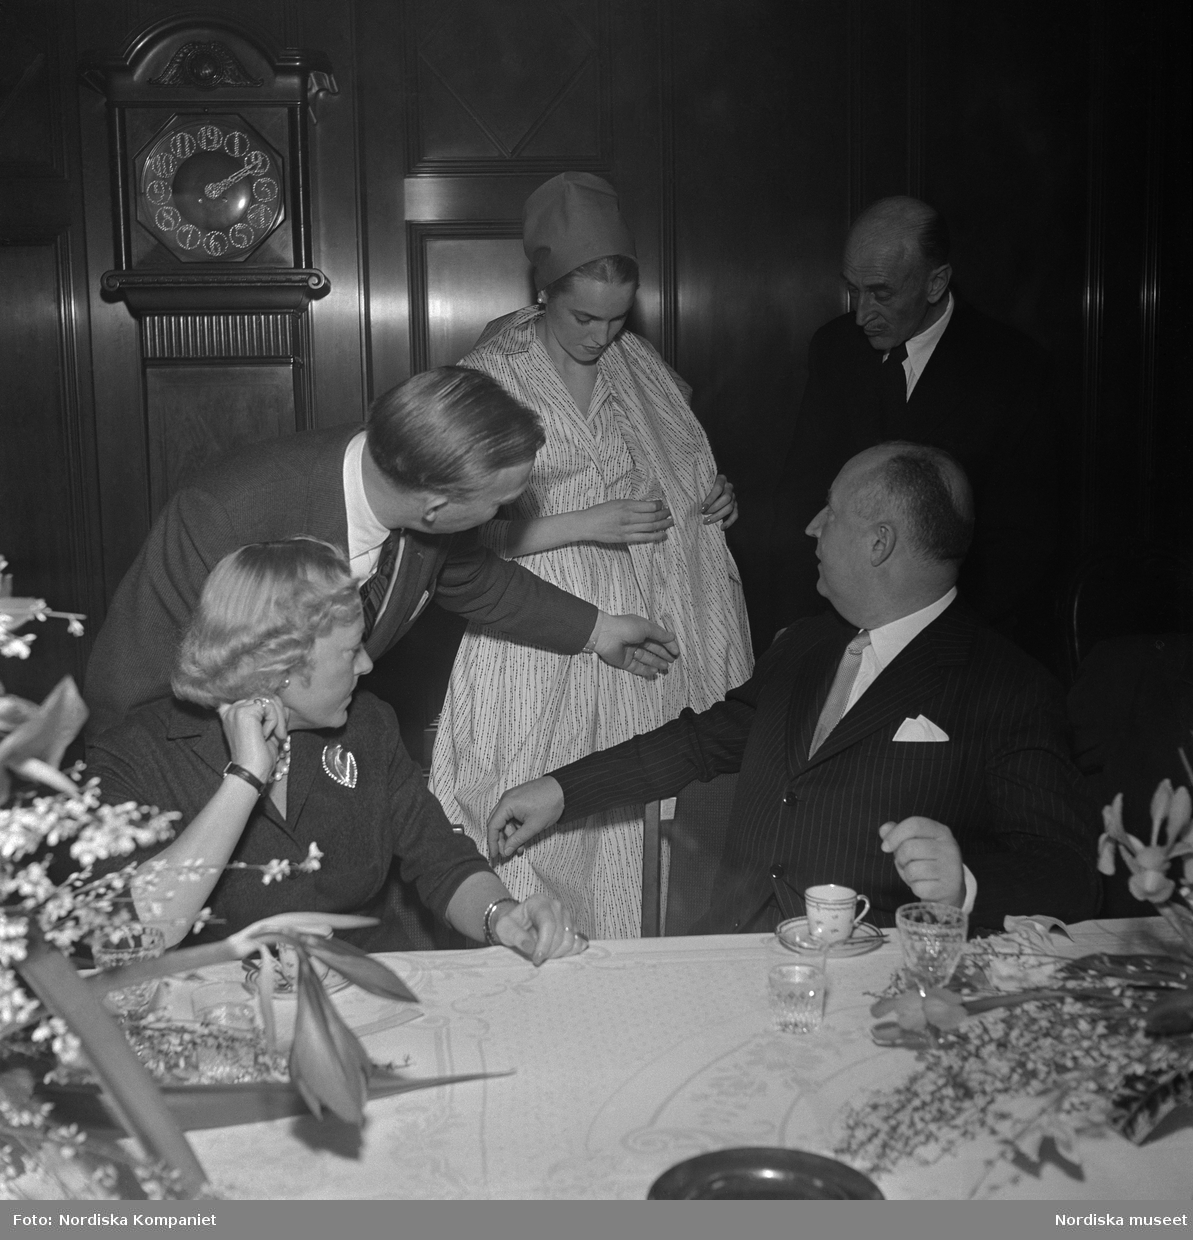 Christian Diors besök på NK, Nordiska kompaniet i Stockholm, februari 1957. Han bjuds på en visning av plagg uppsydda av tyger från NK:s textilkammare av Kurt Jacobsson och Pelle Lundgren. Mannekäng visar plagg. Vid bordet sitter Dior tillsammans med Astrid Sampe.